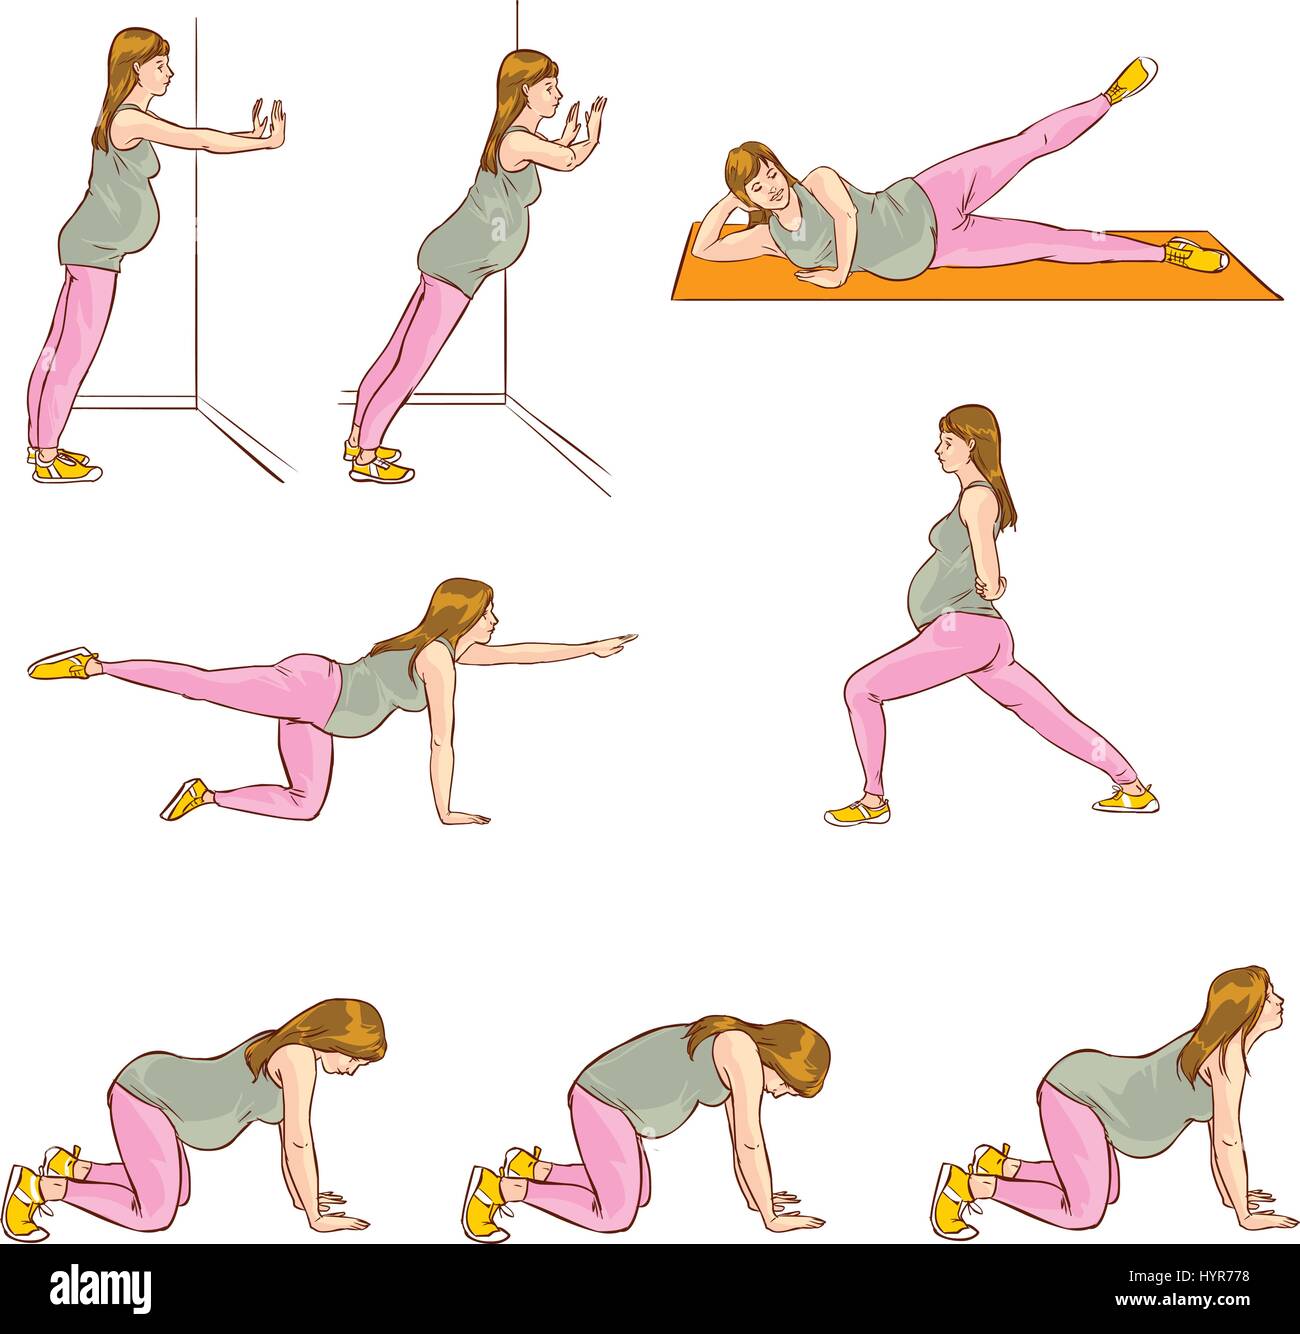 упражнения на грудь во время беременности фото 7